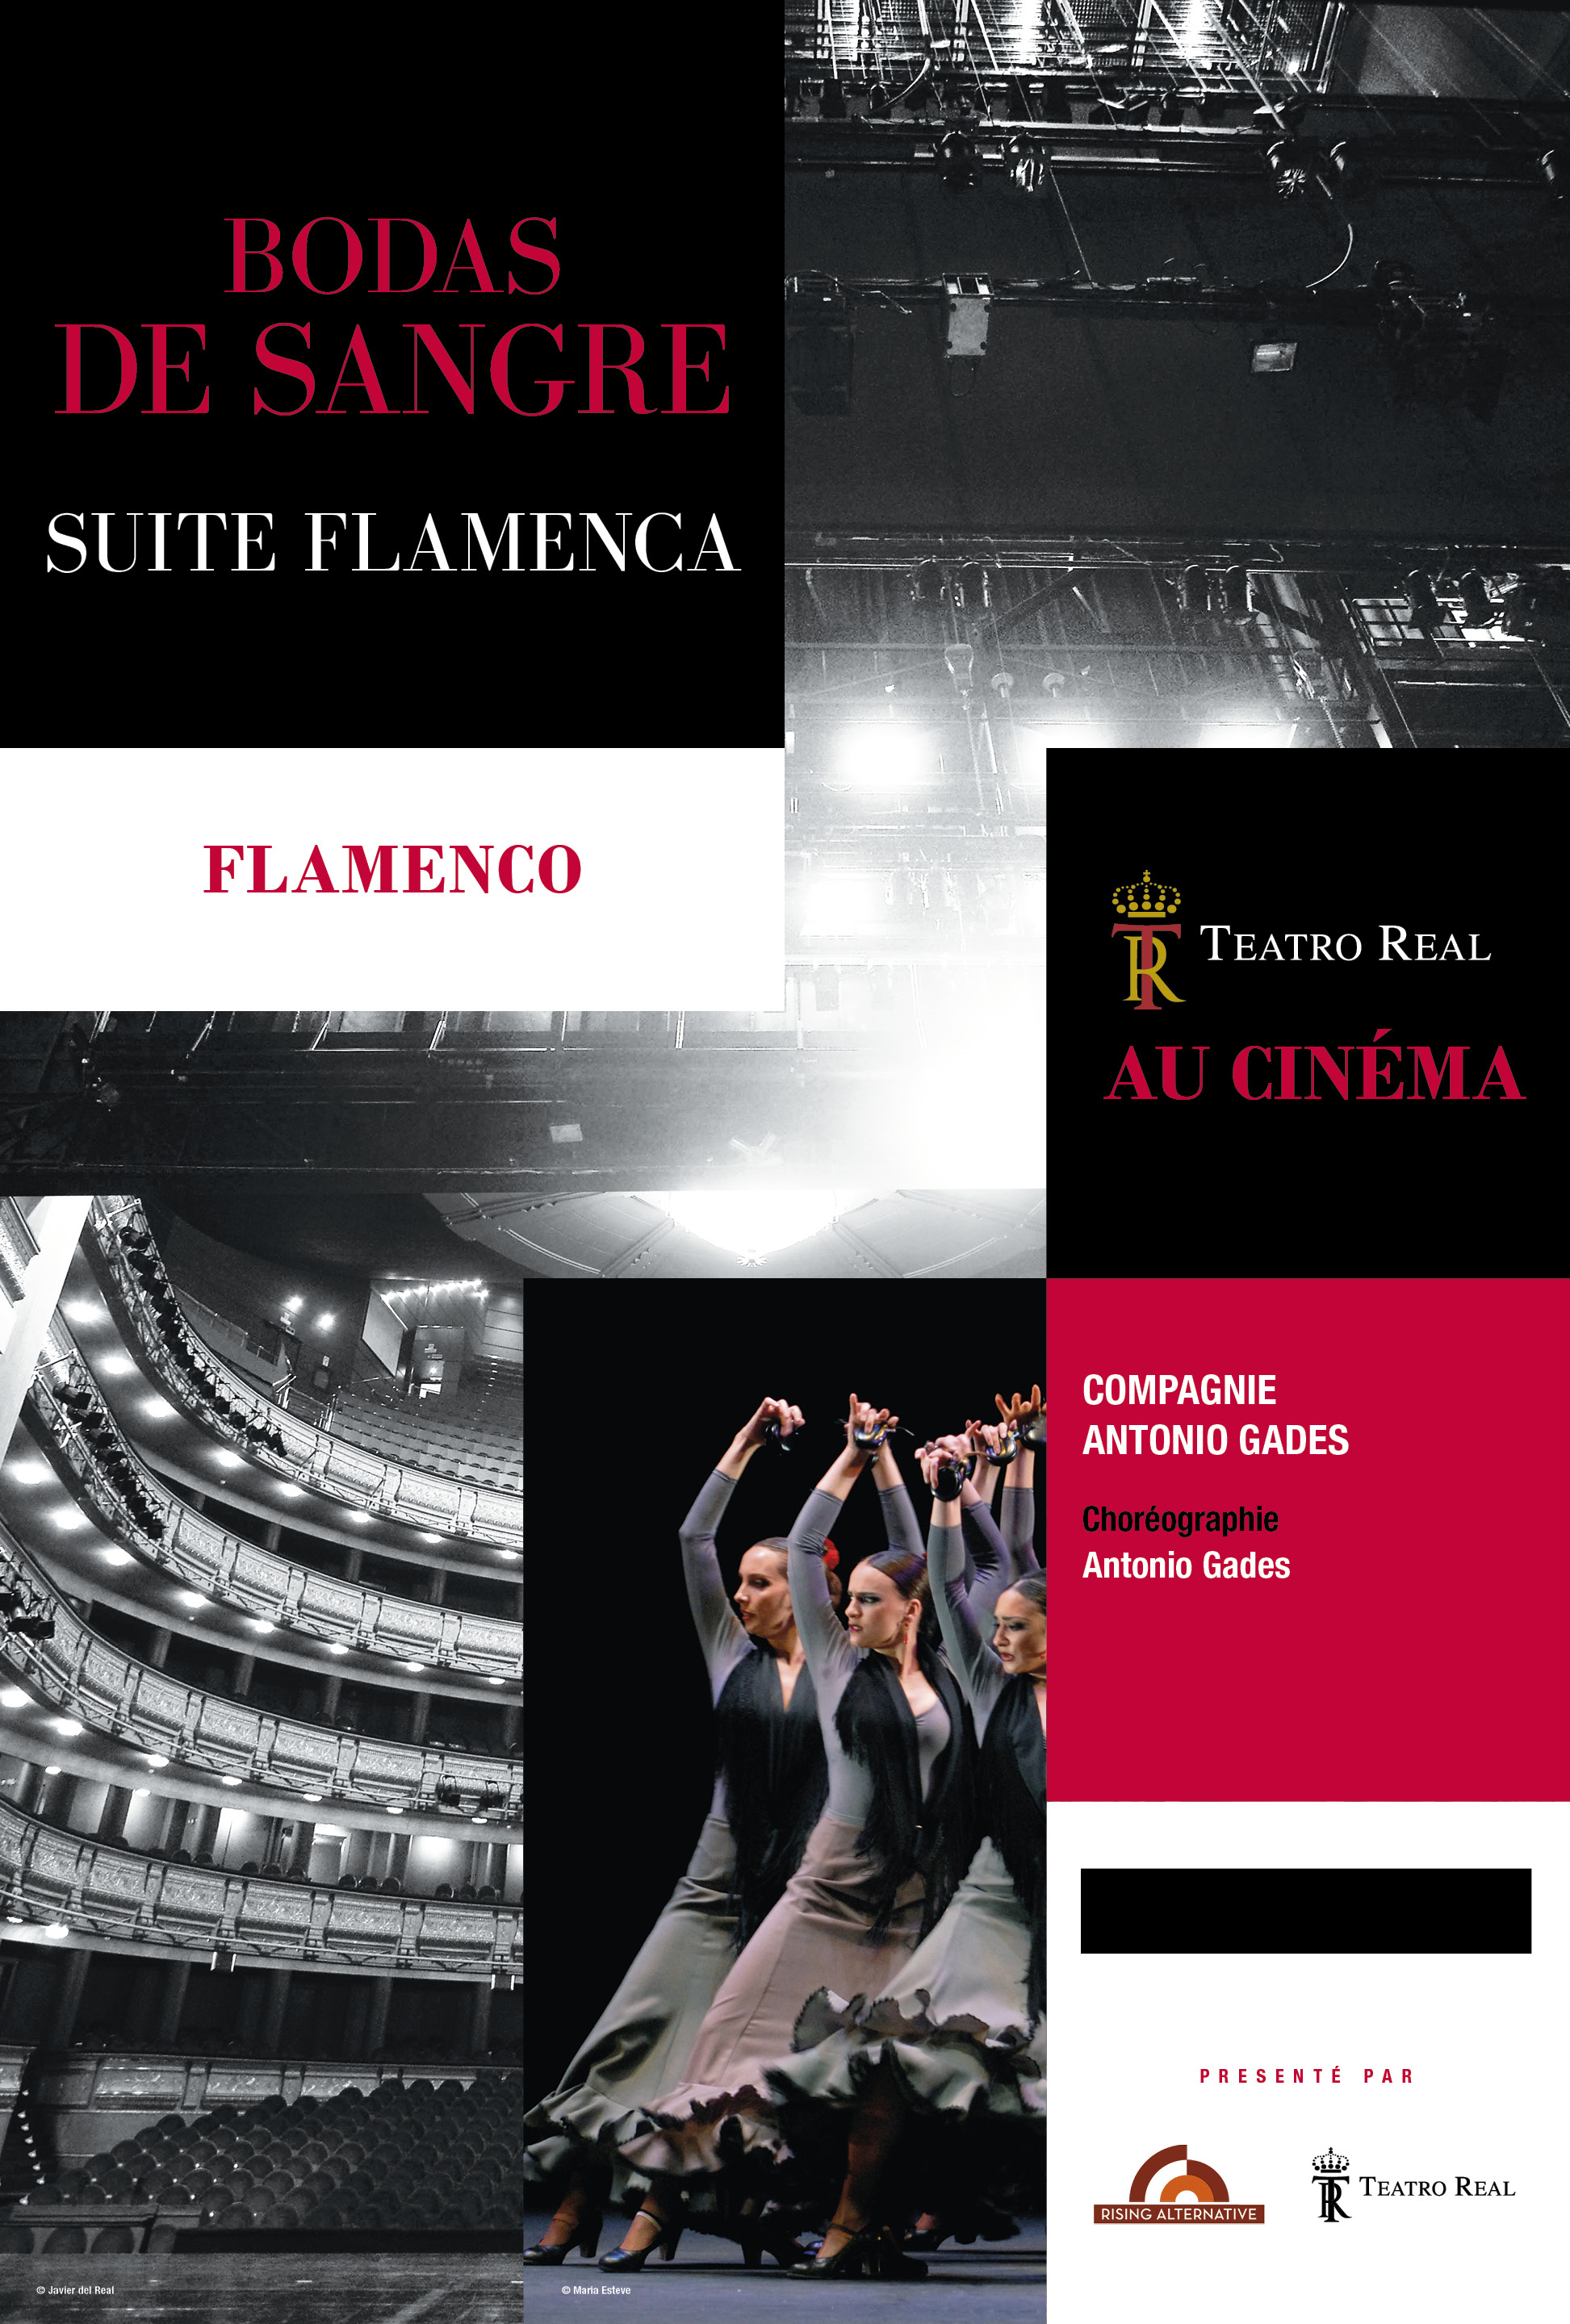 Bodas de sangre - Suite Flamenca (Rising Alternative)